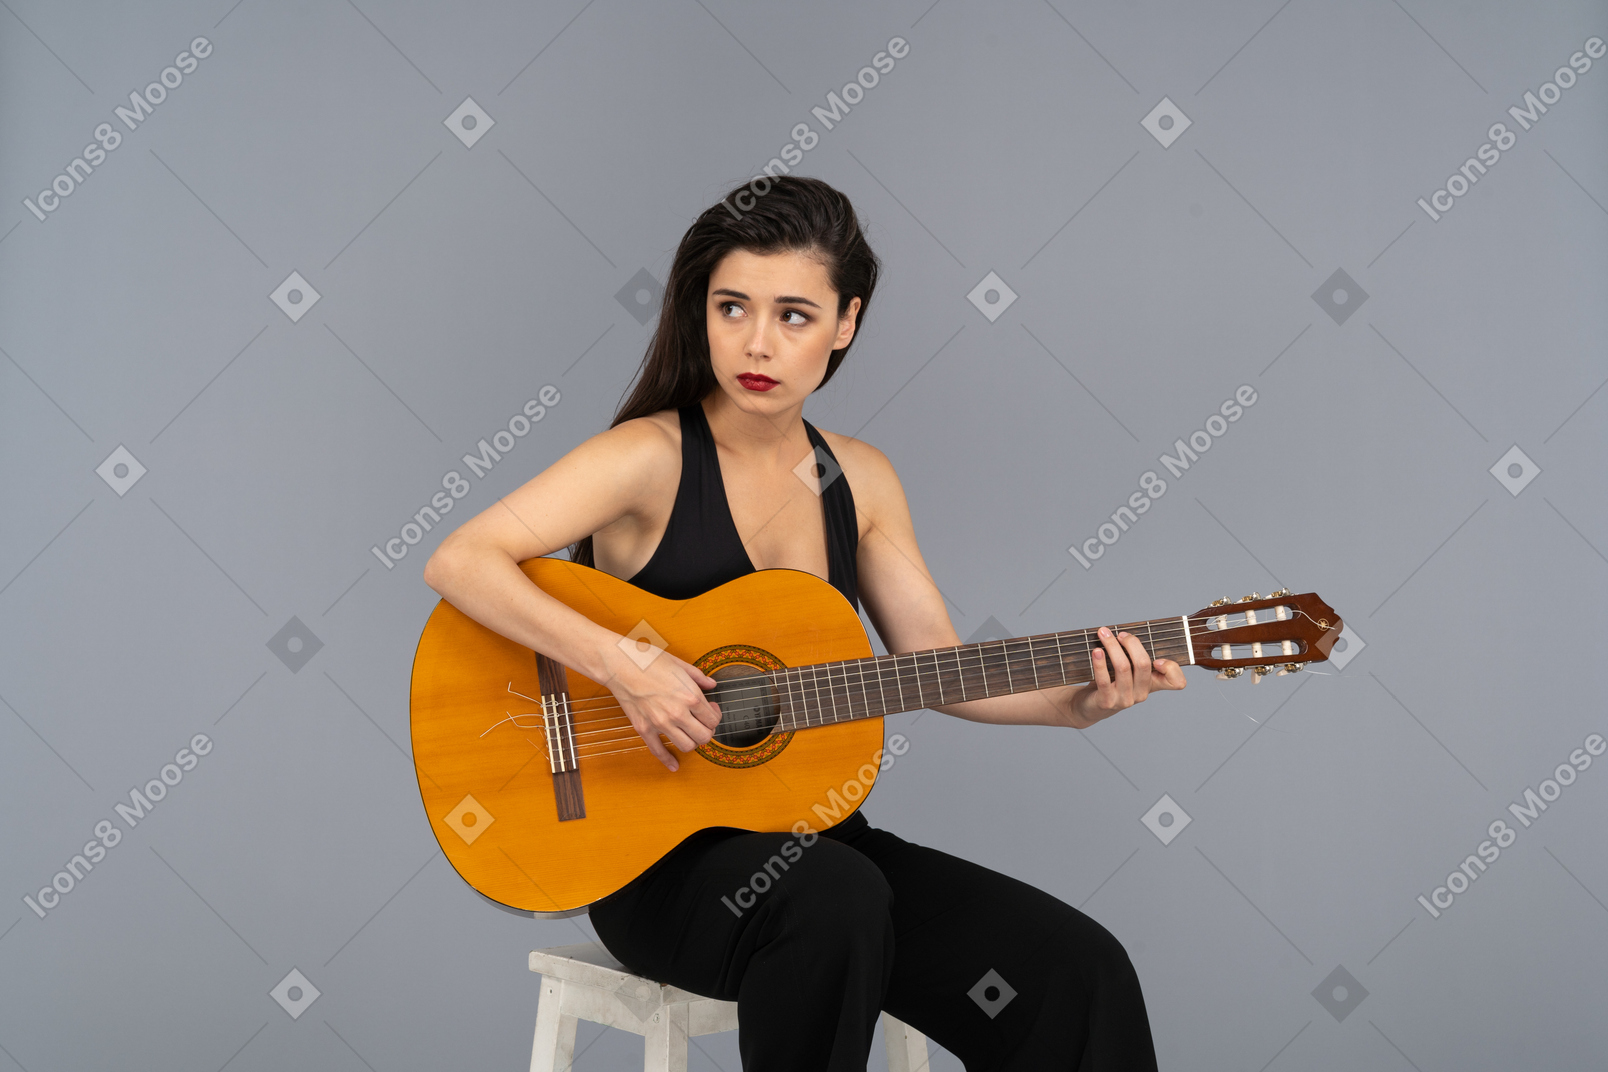 Vorderansicht einer sitzenden jungen dame im schwarzen anzug, die gitarre spielt und beiseite schaut